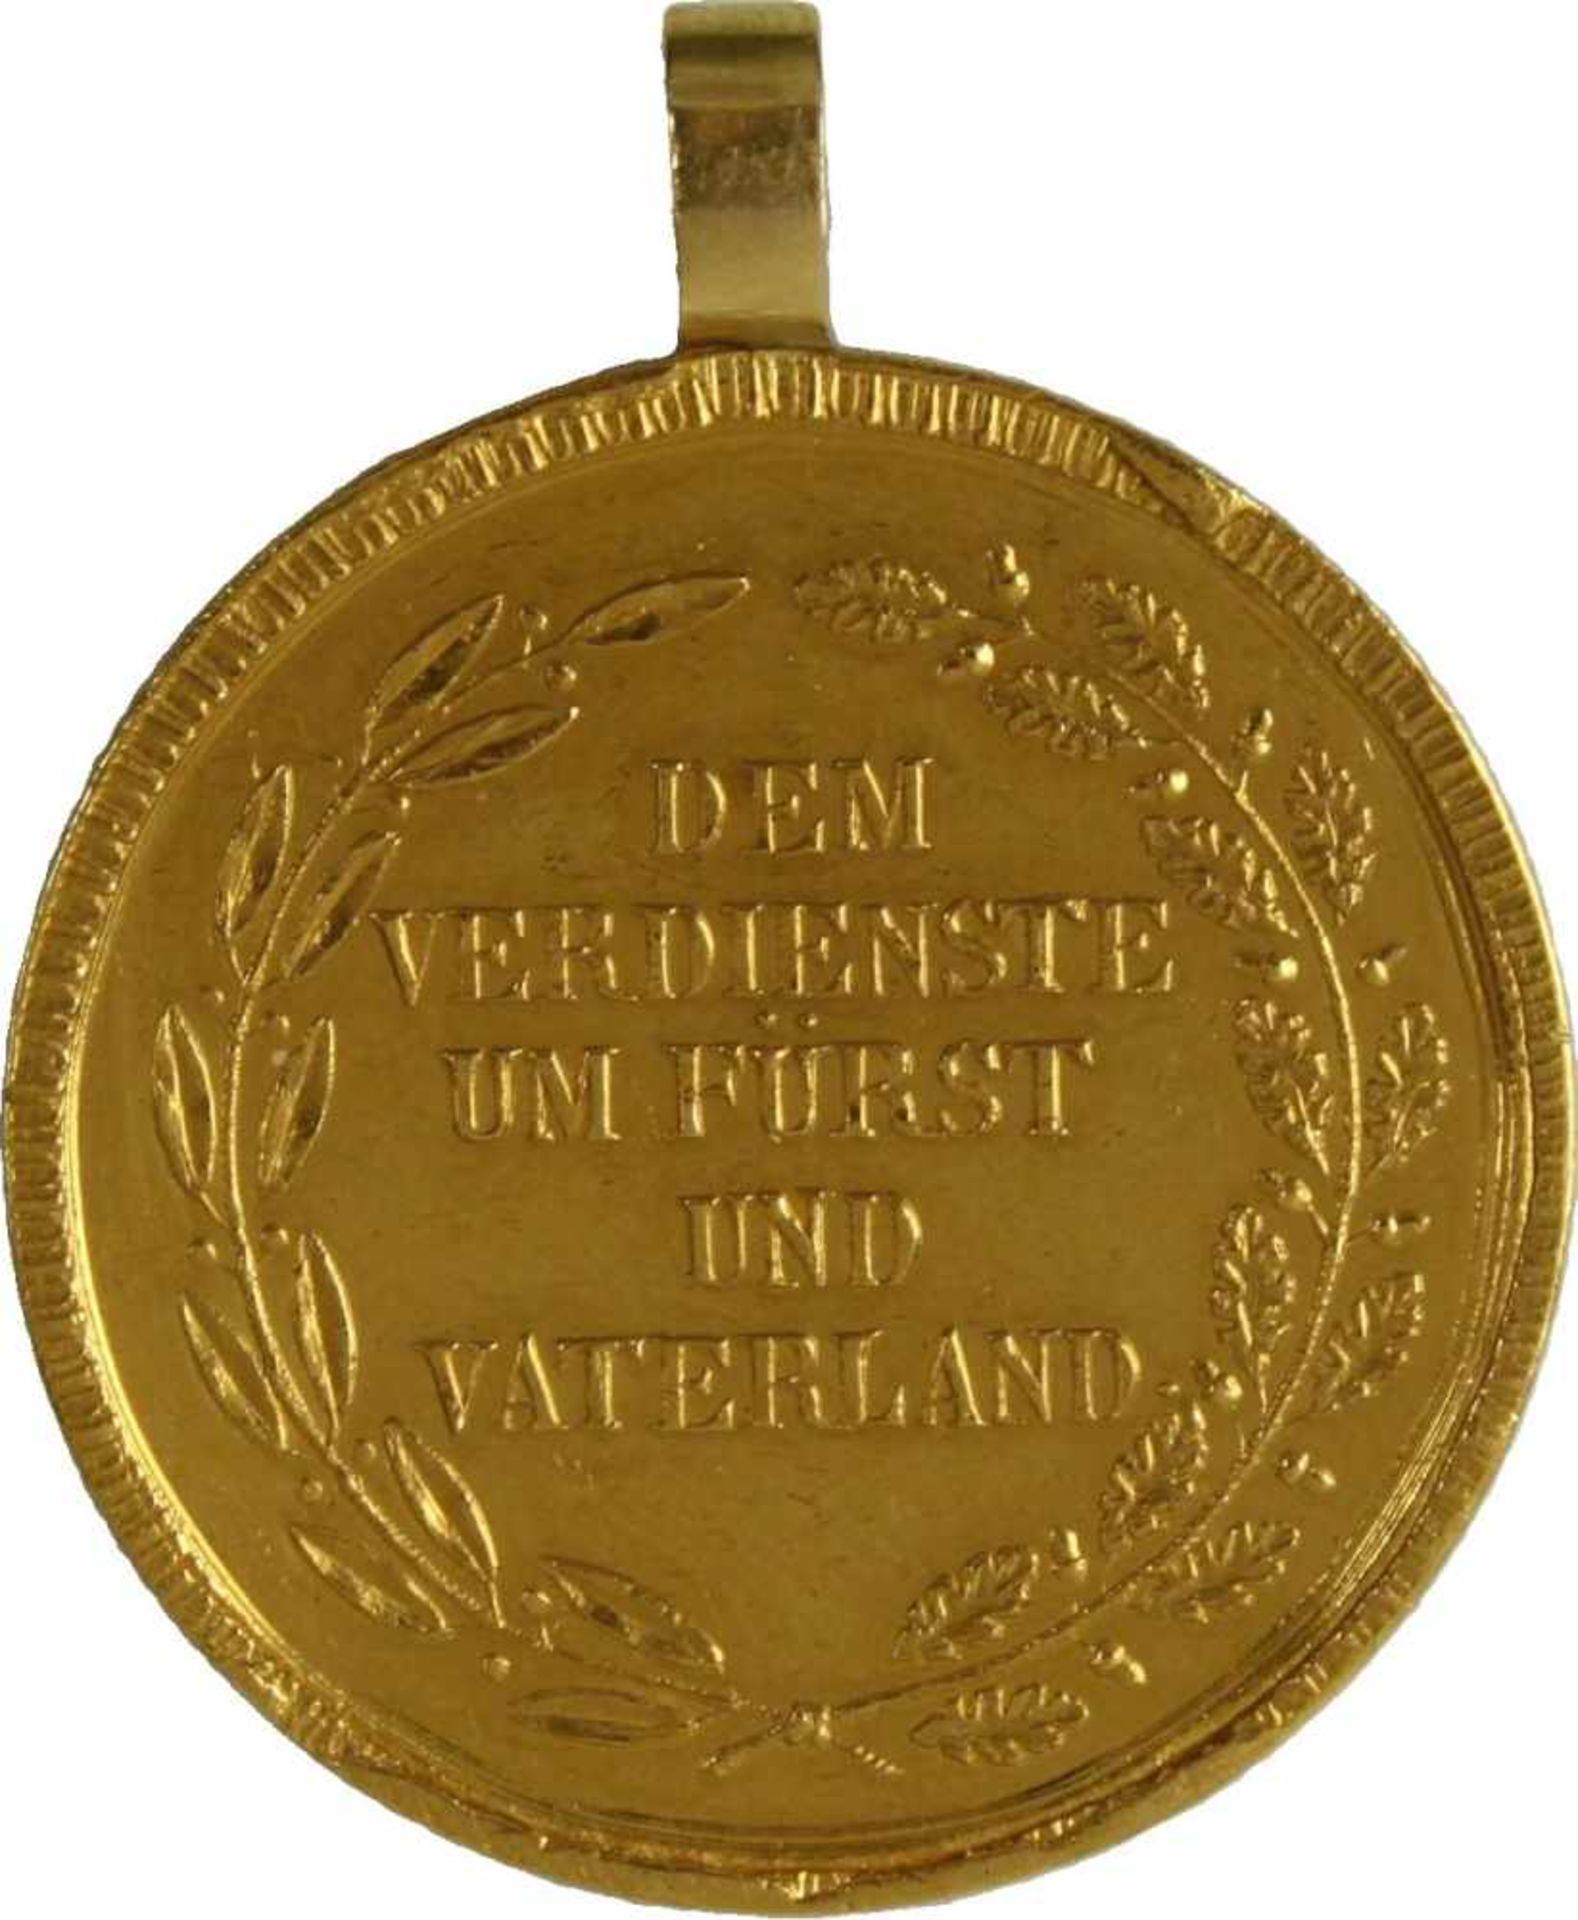 Goldene Zivilverdienstmedaille, Brustbild König Max Joseph I., verliehen 1806-1840. Medaille Gold, - Bild 2 aus 4